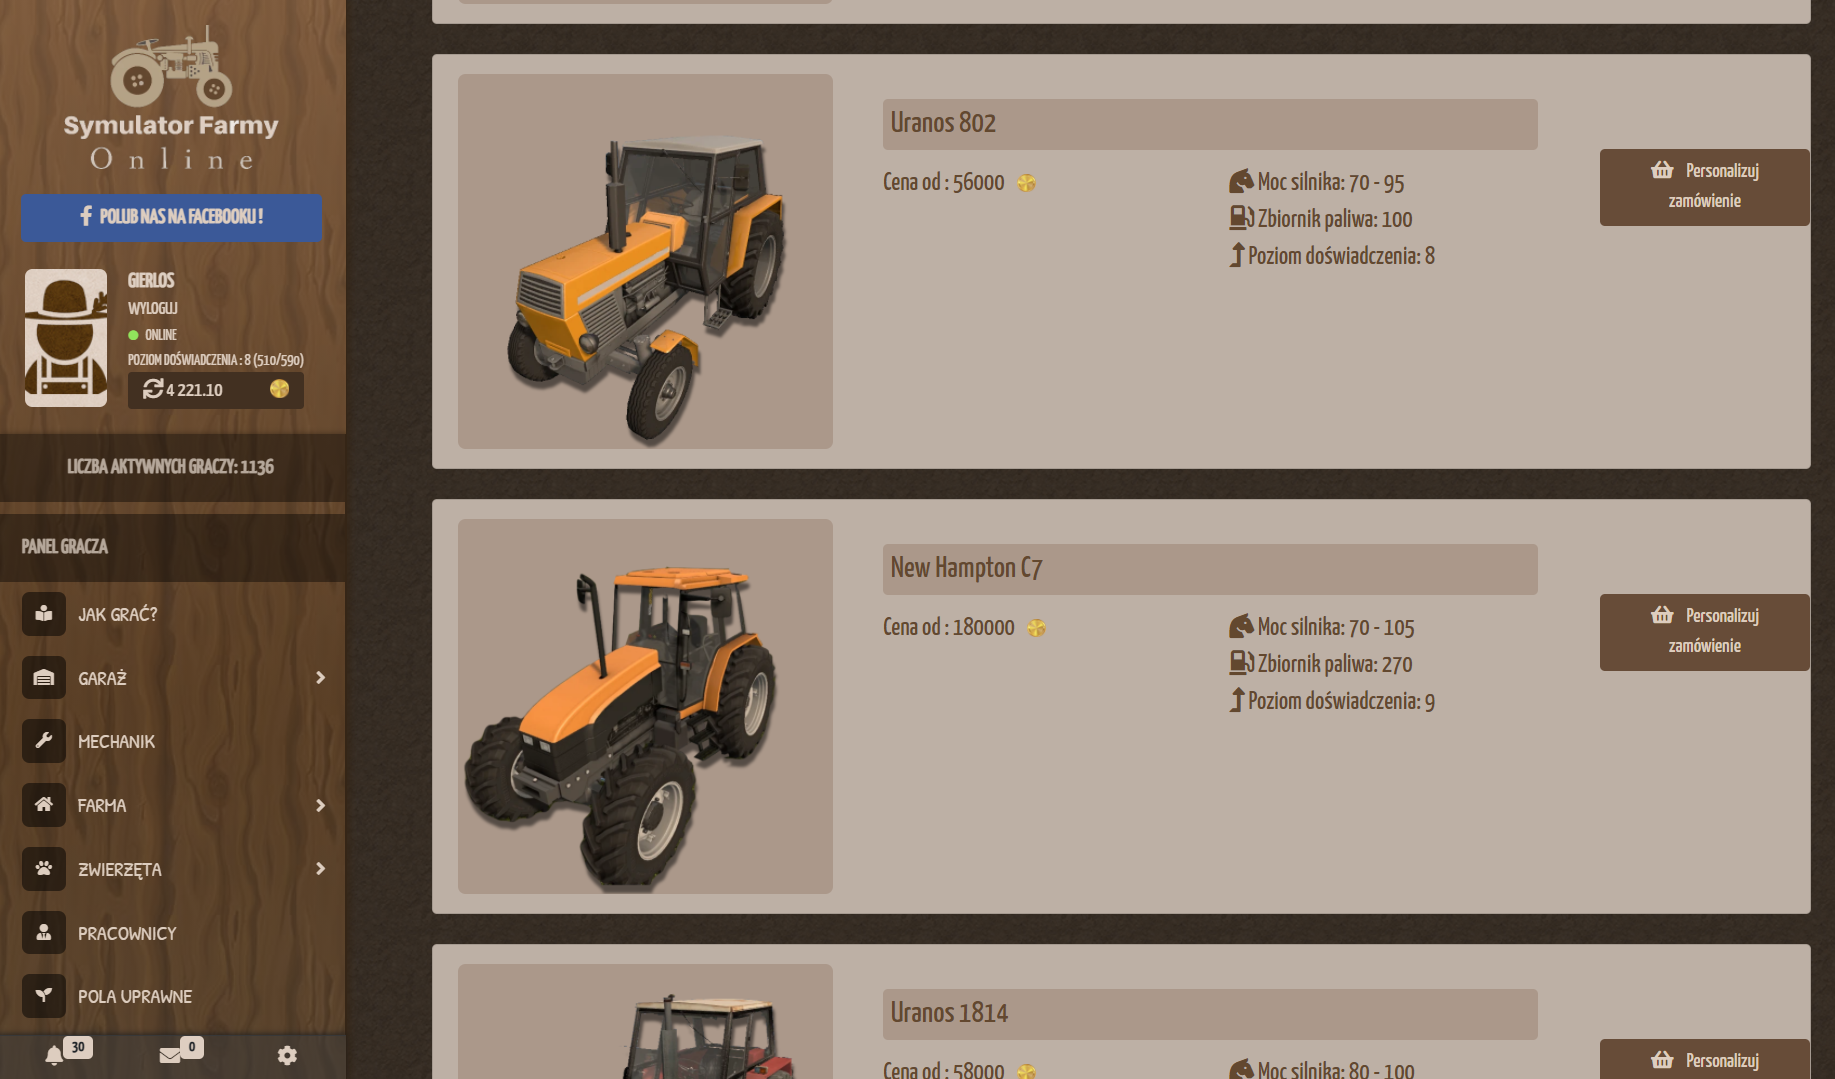 Symulator Farmy Online gra farmerska